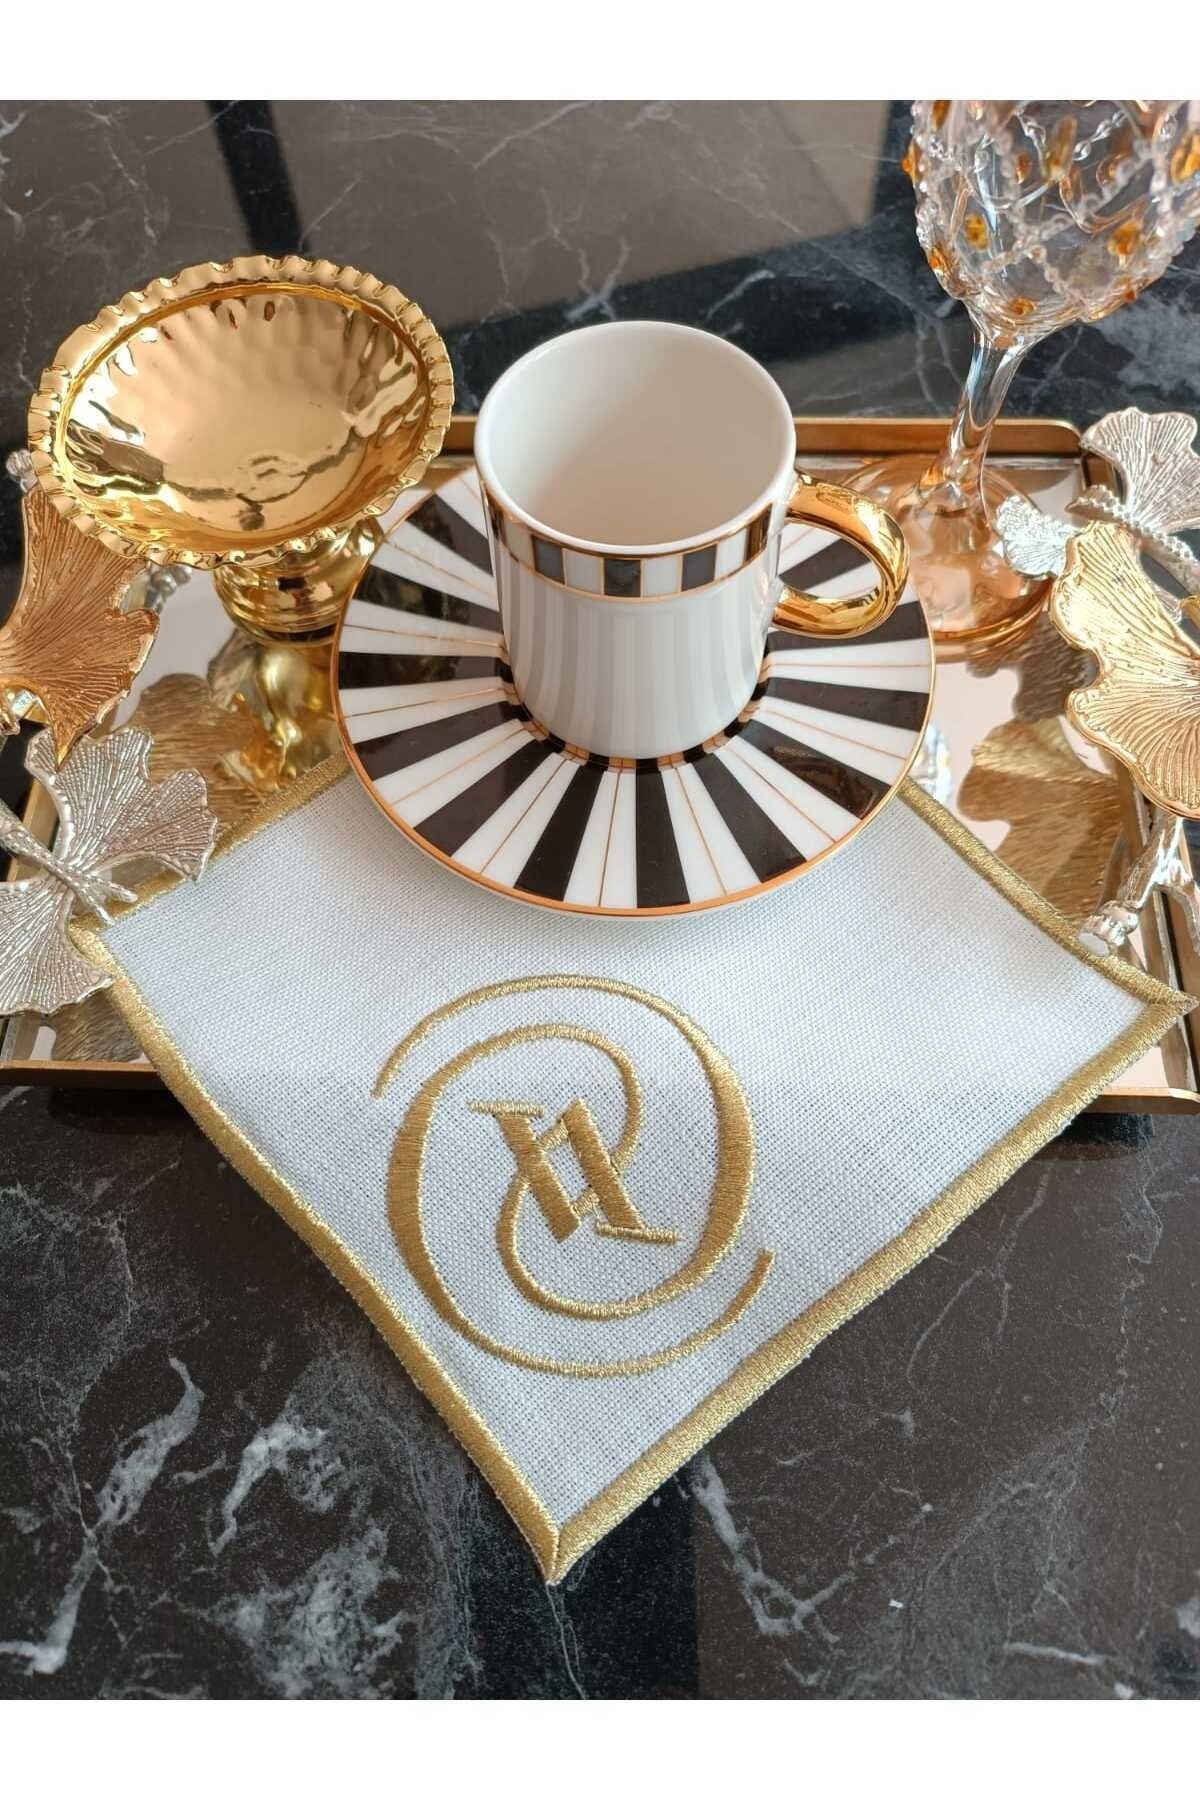 LASETU faye desenli gold simli kahve yanı peçete sunum peçetesi kokteyl peçete 4 adet